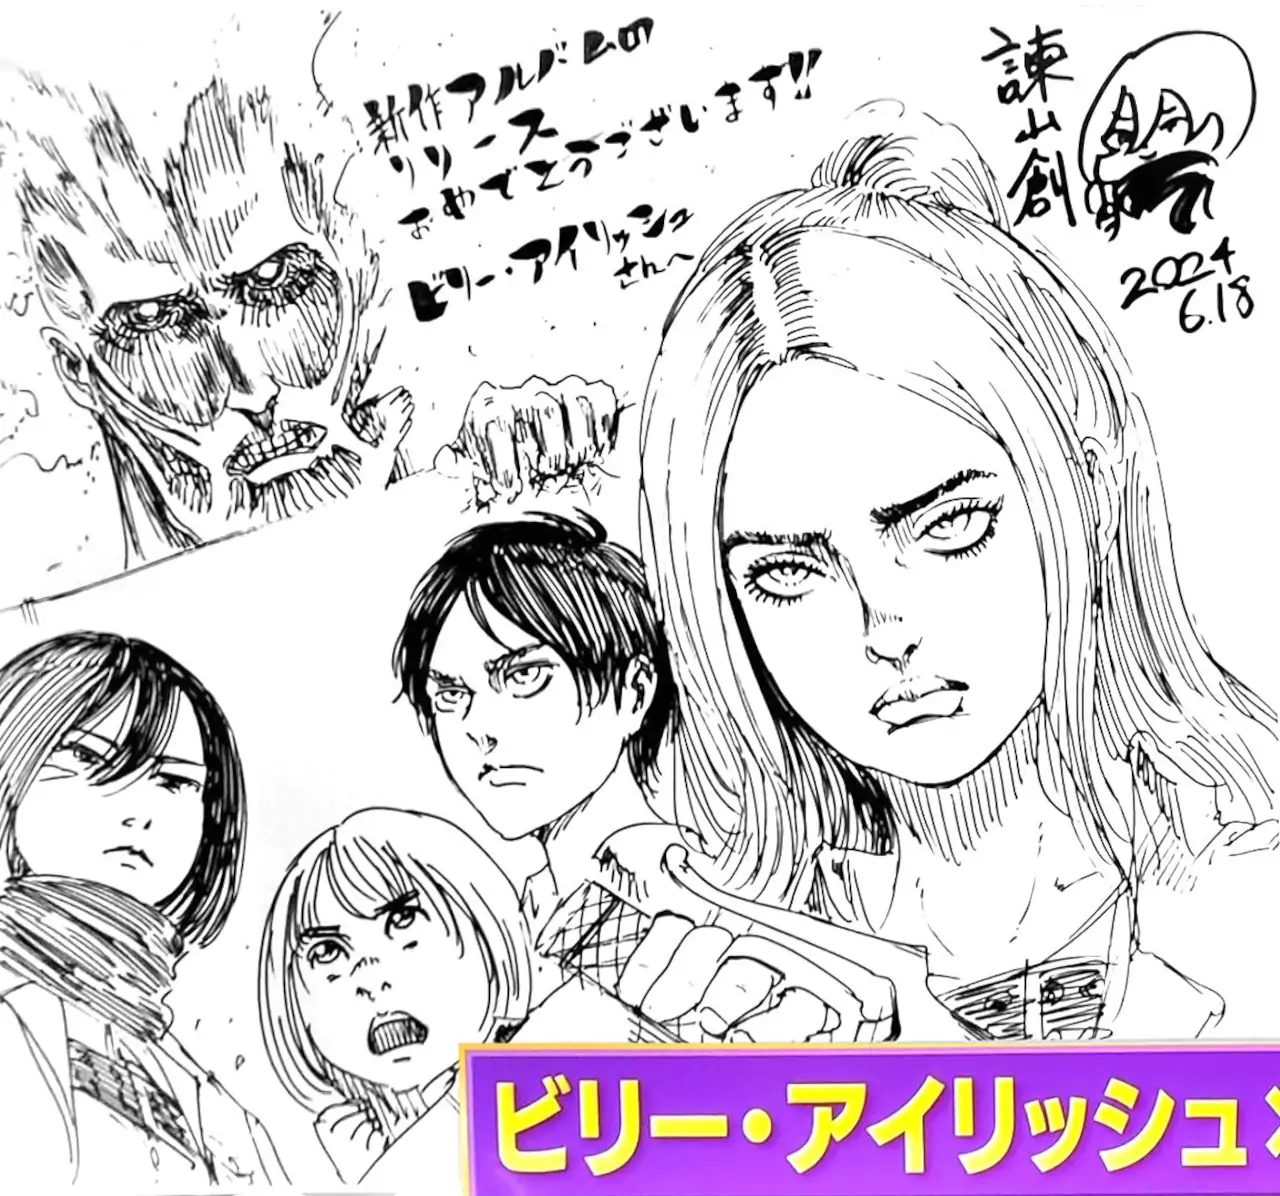 Billie Eilish ahora es parte de Attack on Titan con esta ilustración oficial de Hajime Isayama